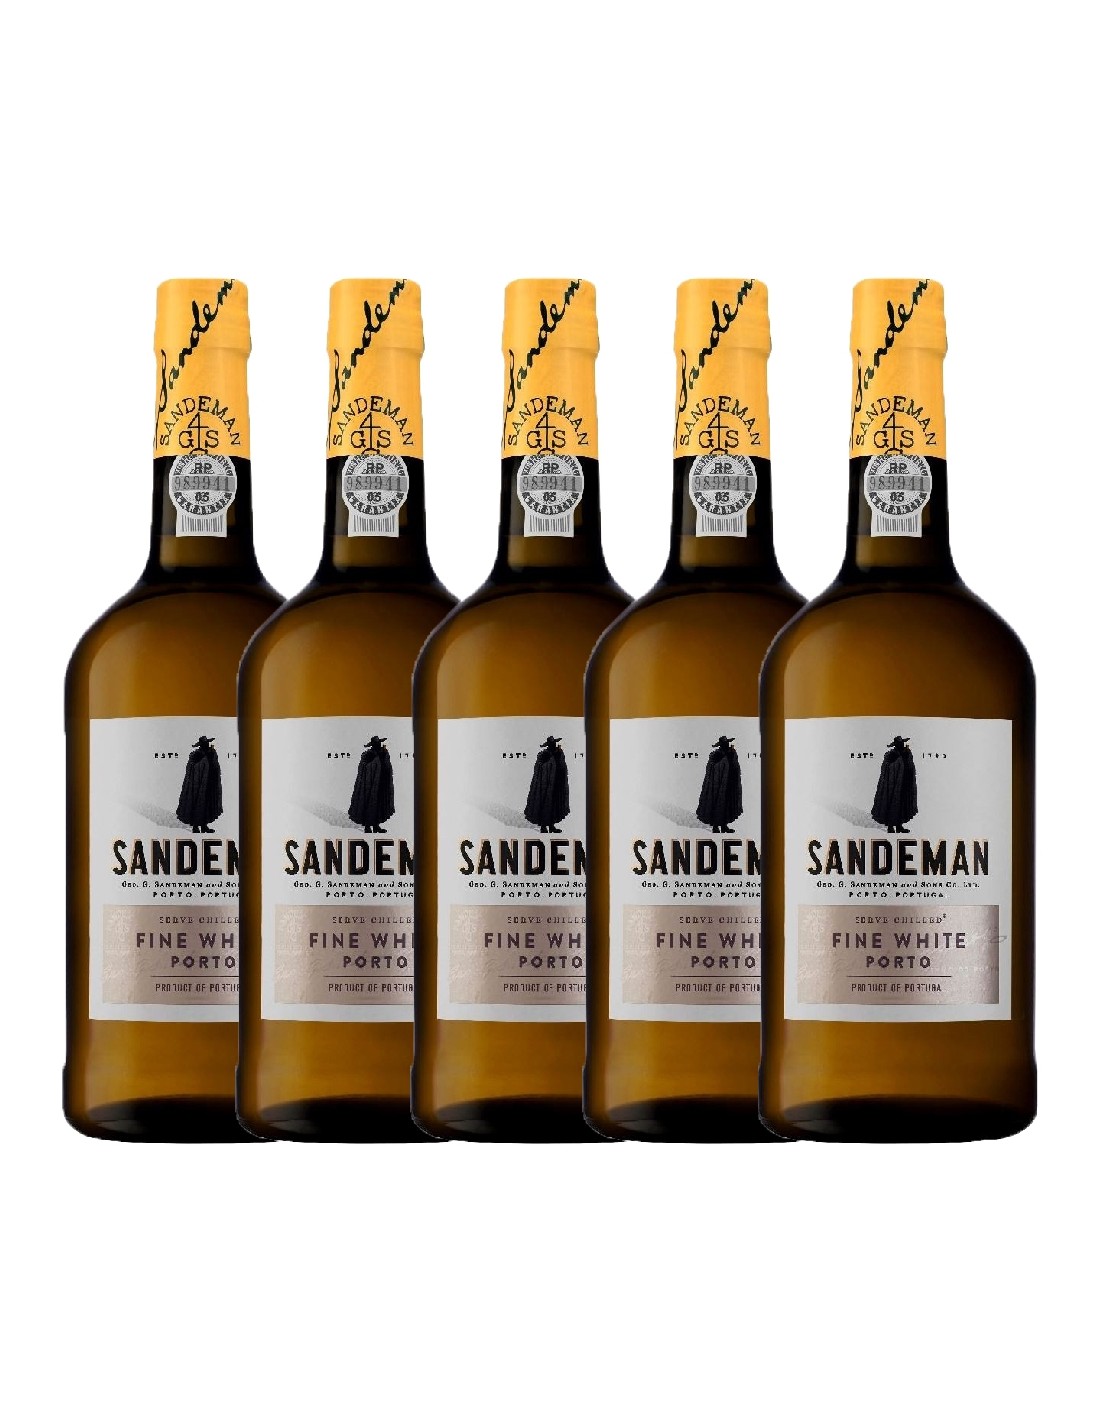 Pachet 5 sticle Vin porto alb, Sandeman White, 0.75L, 19.5% alc., Portugalia alcooldiscount.ro